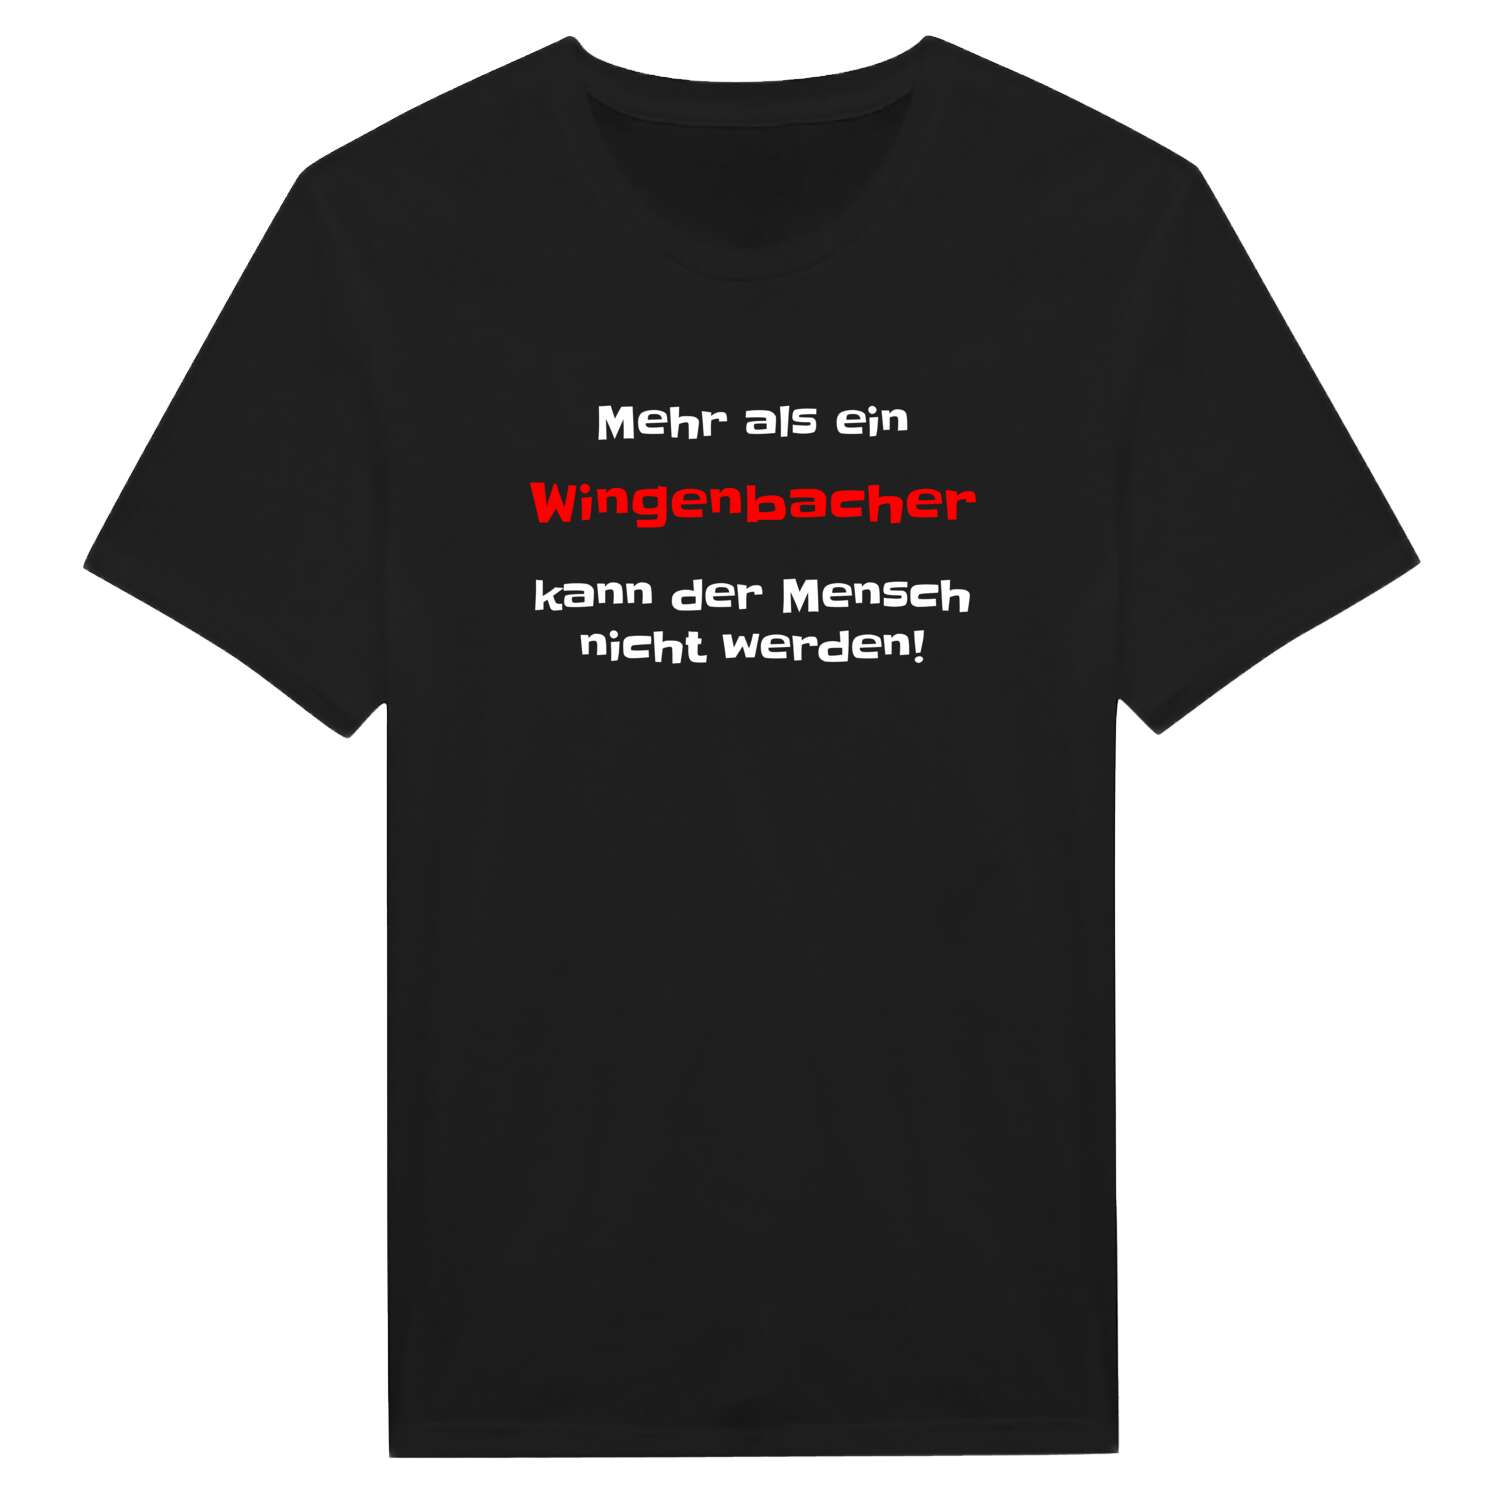 Wingenbach T-Shirt »Mehr als ein«